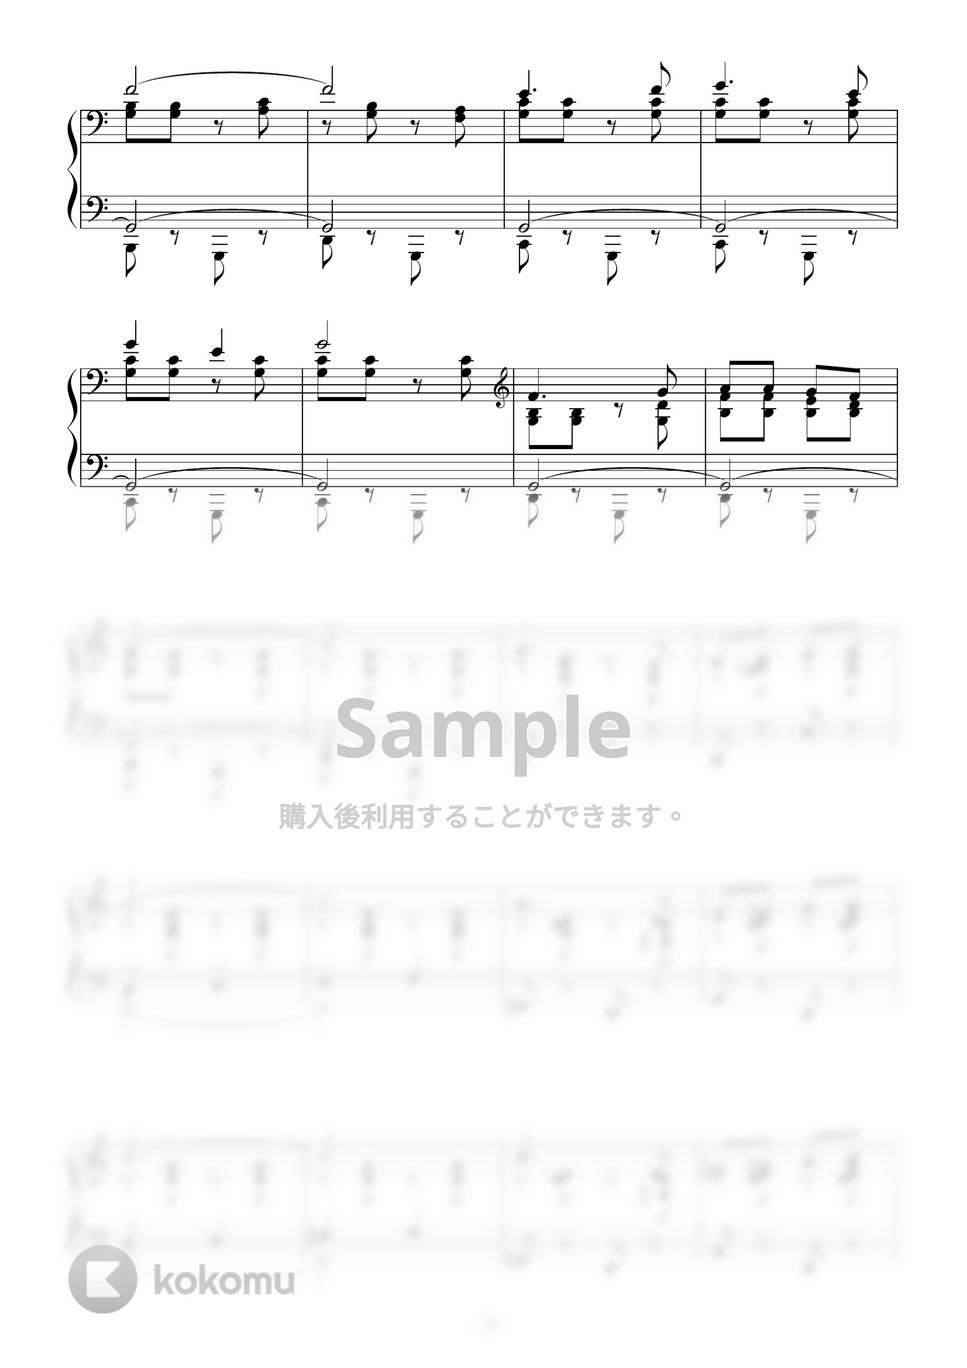 映画『サウンド・オブ・ミュージック』OST - ドレミの歌 by Peony